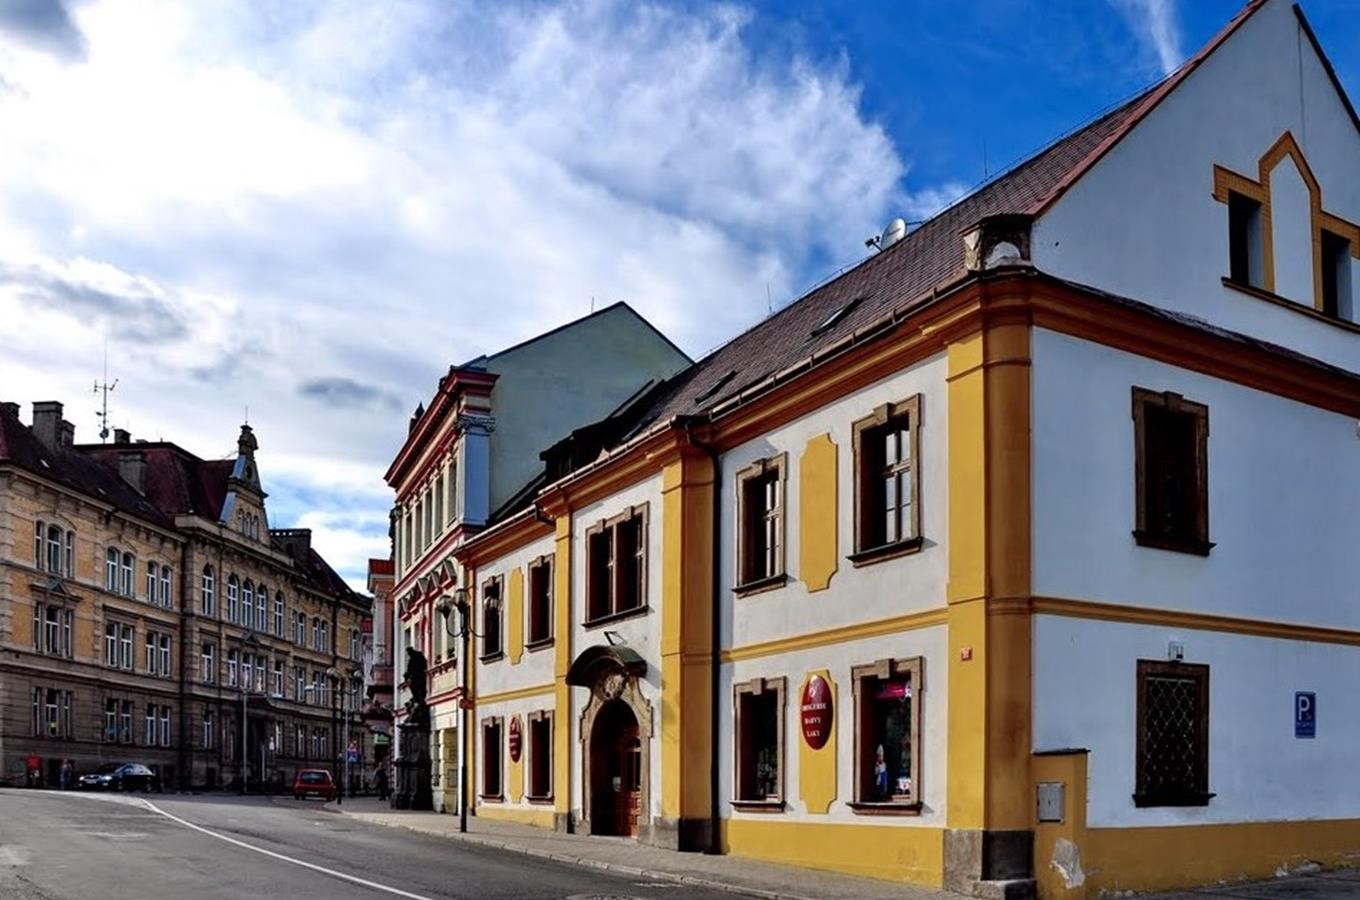 Náměstí v Oseku - secesní lékárna i barokní domy